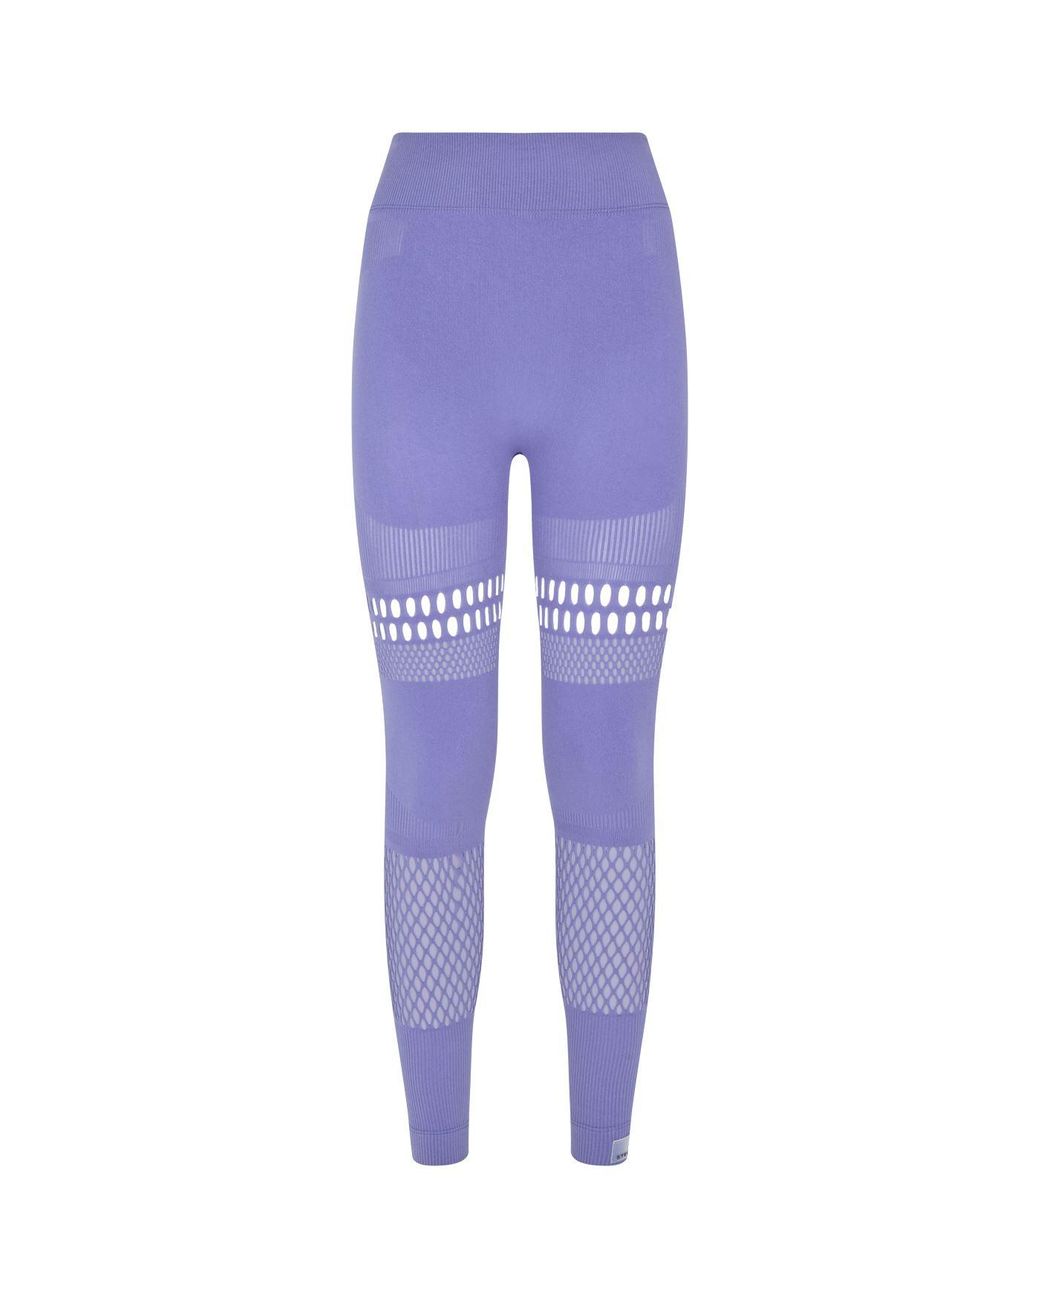 team Roeispaan Humoristisch adidas By Stella McCartney Warp Knit Tights in Purple | Lyst